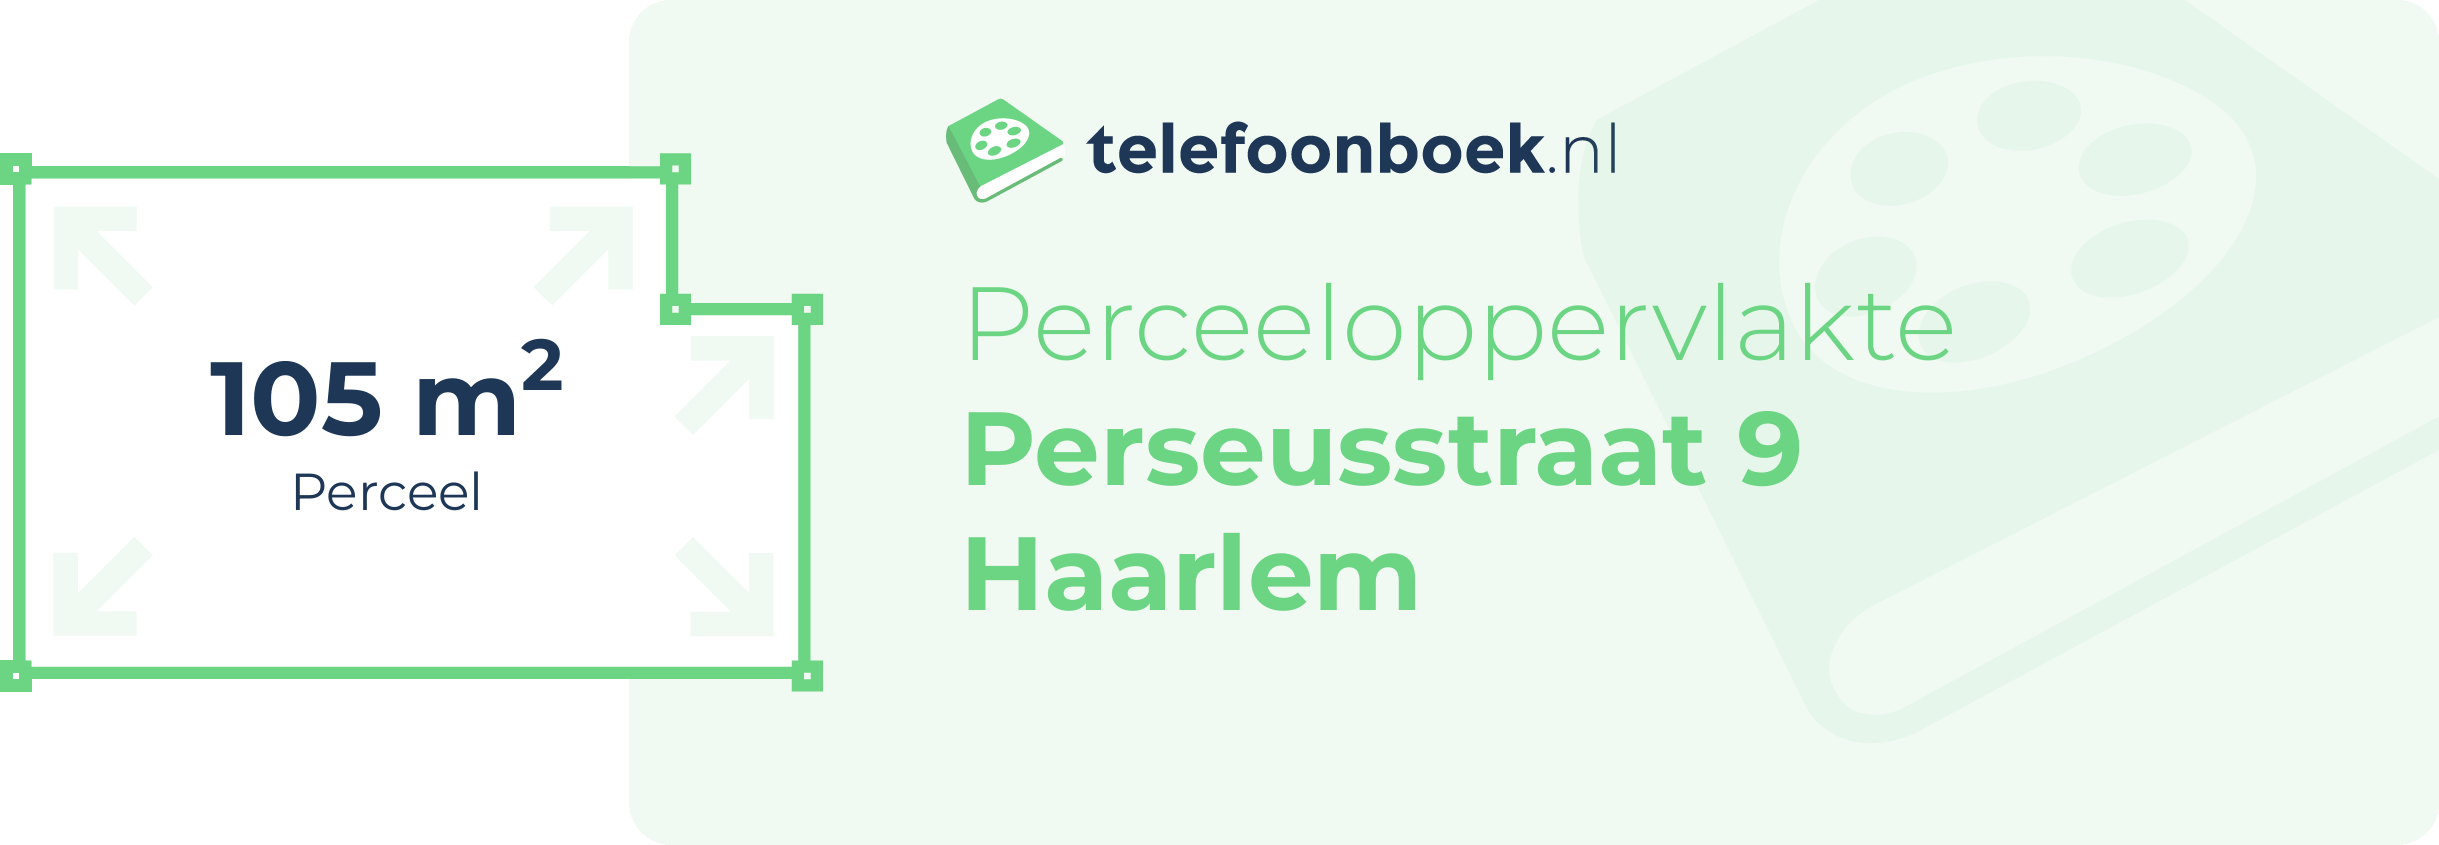 Perceeloppervlakte Perseusstraat 9 Haarlem